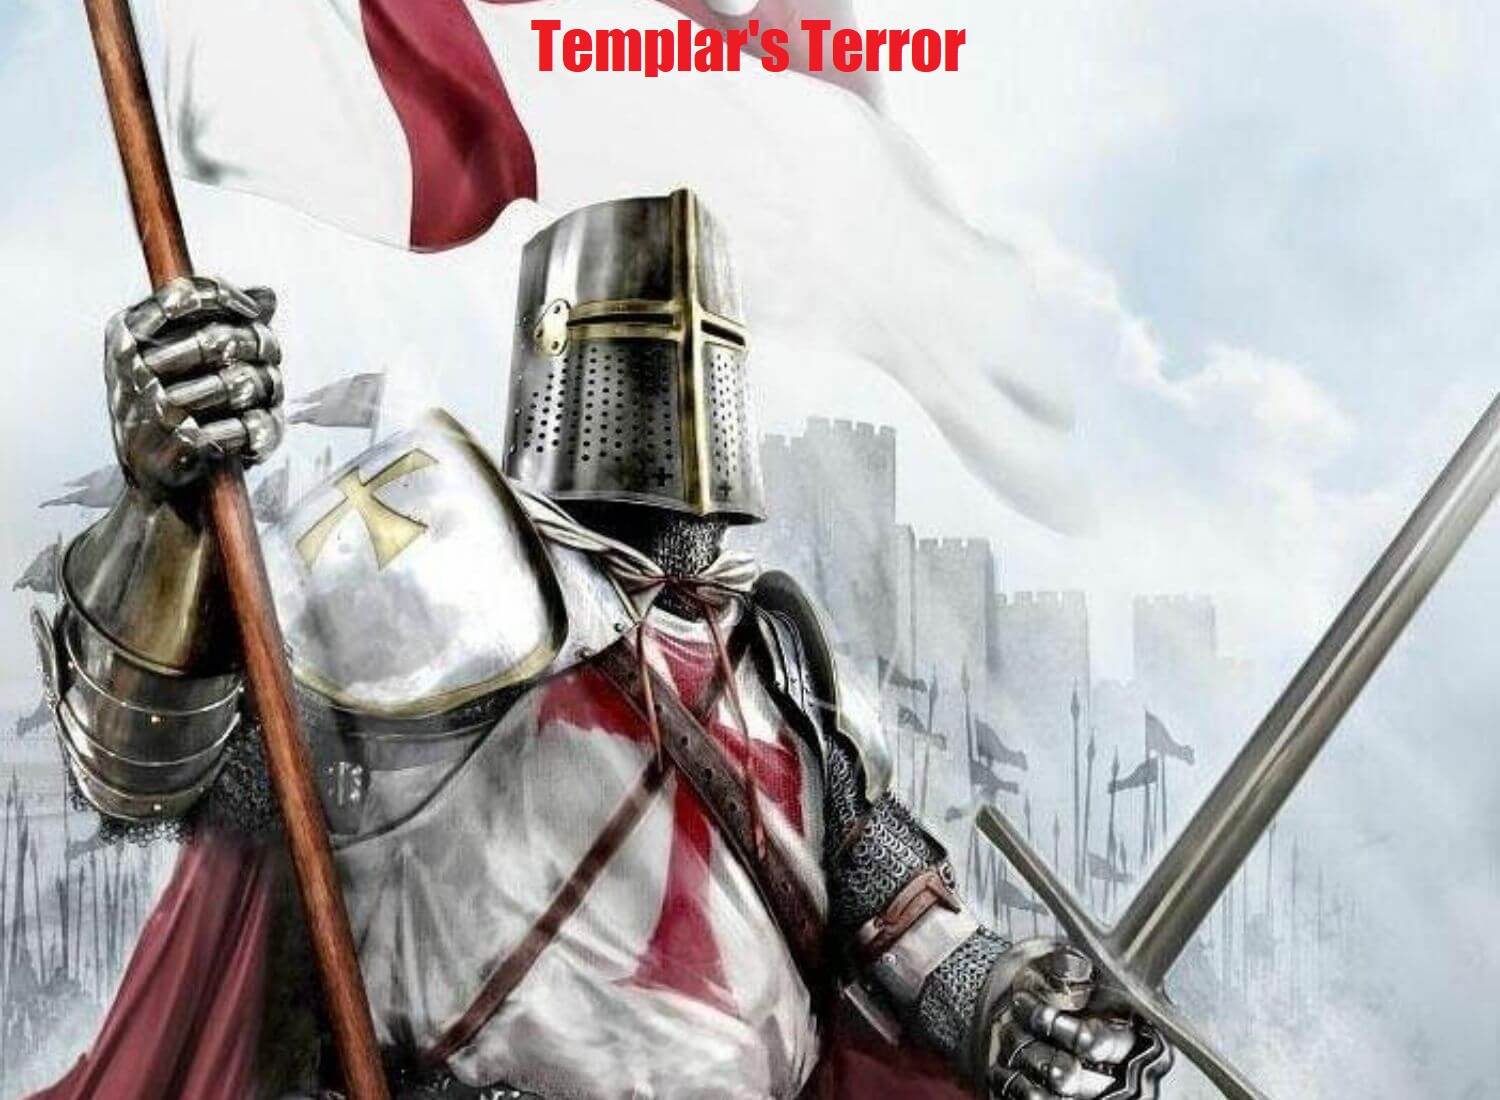 Templar's Terror & Rusterball